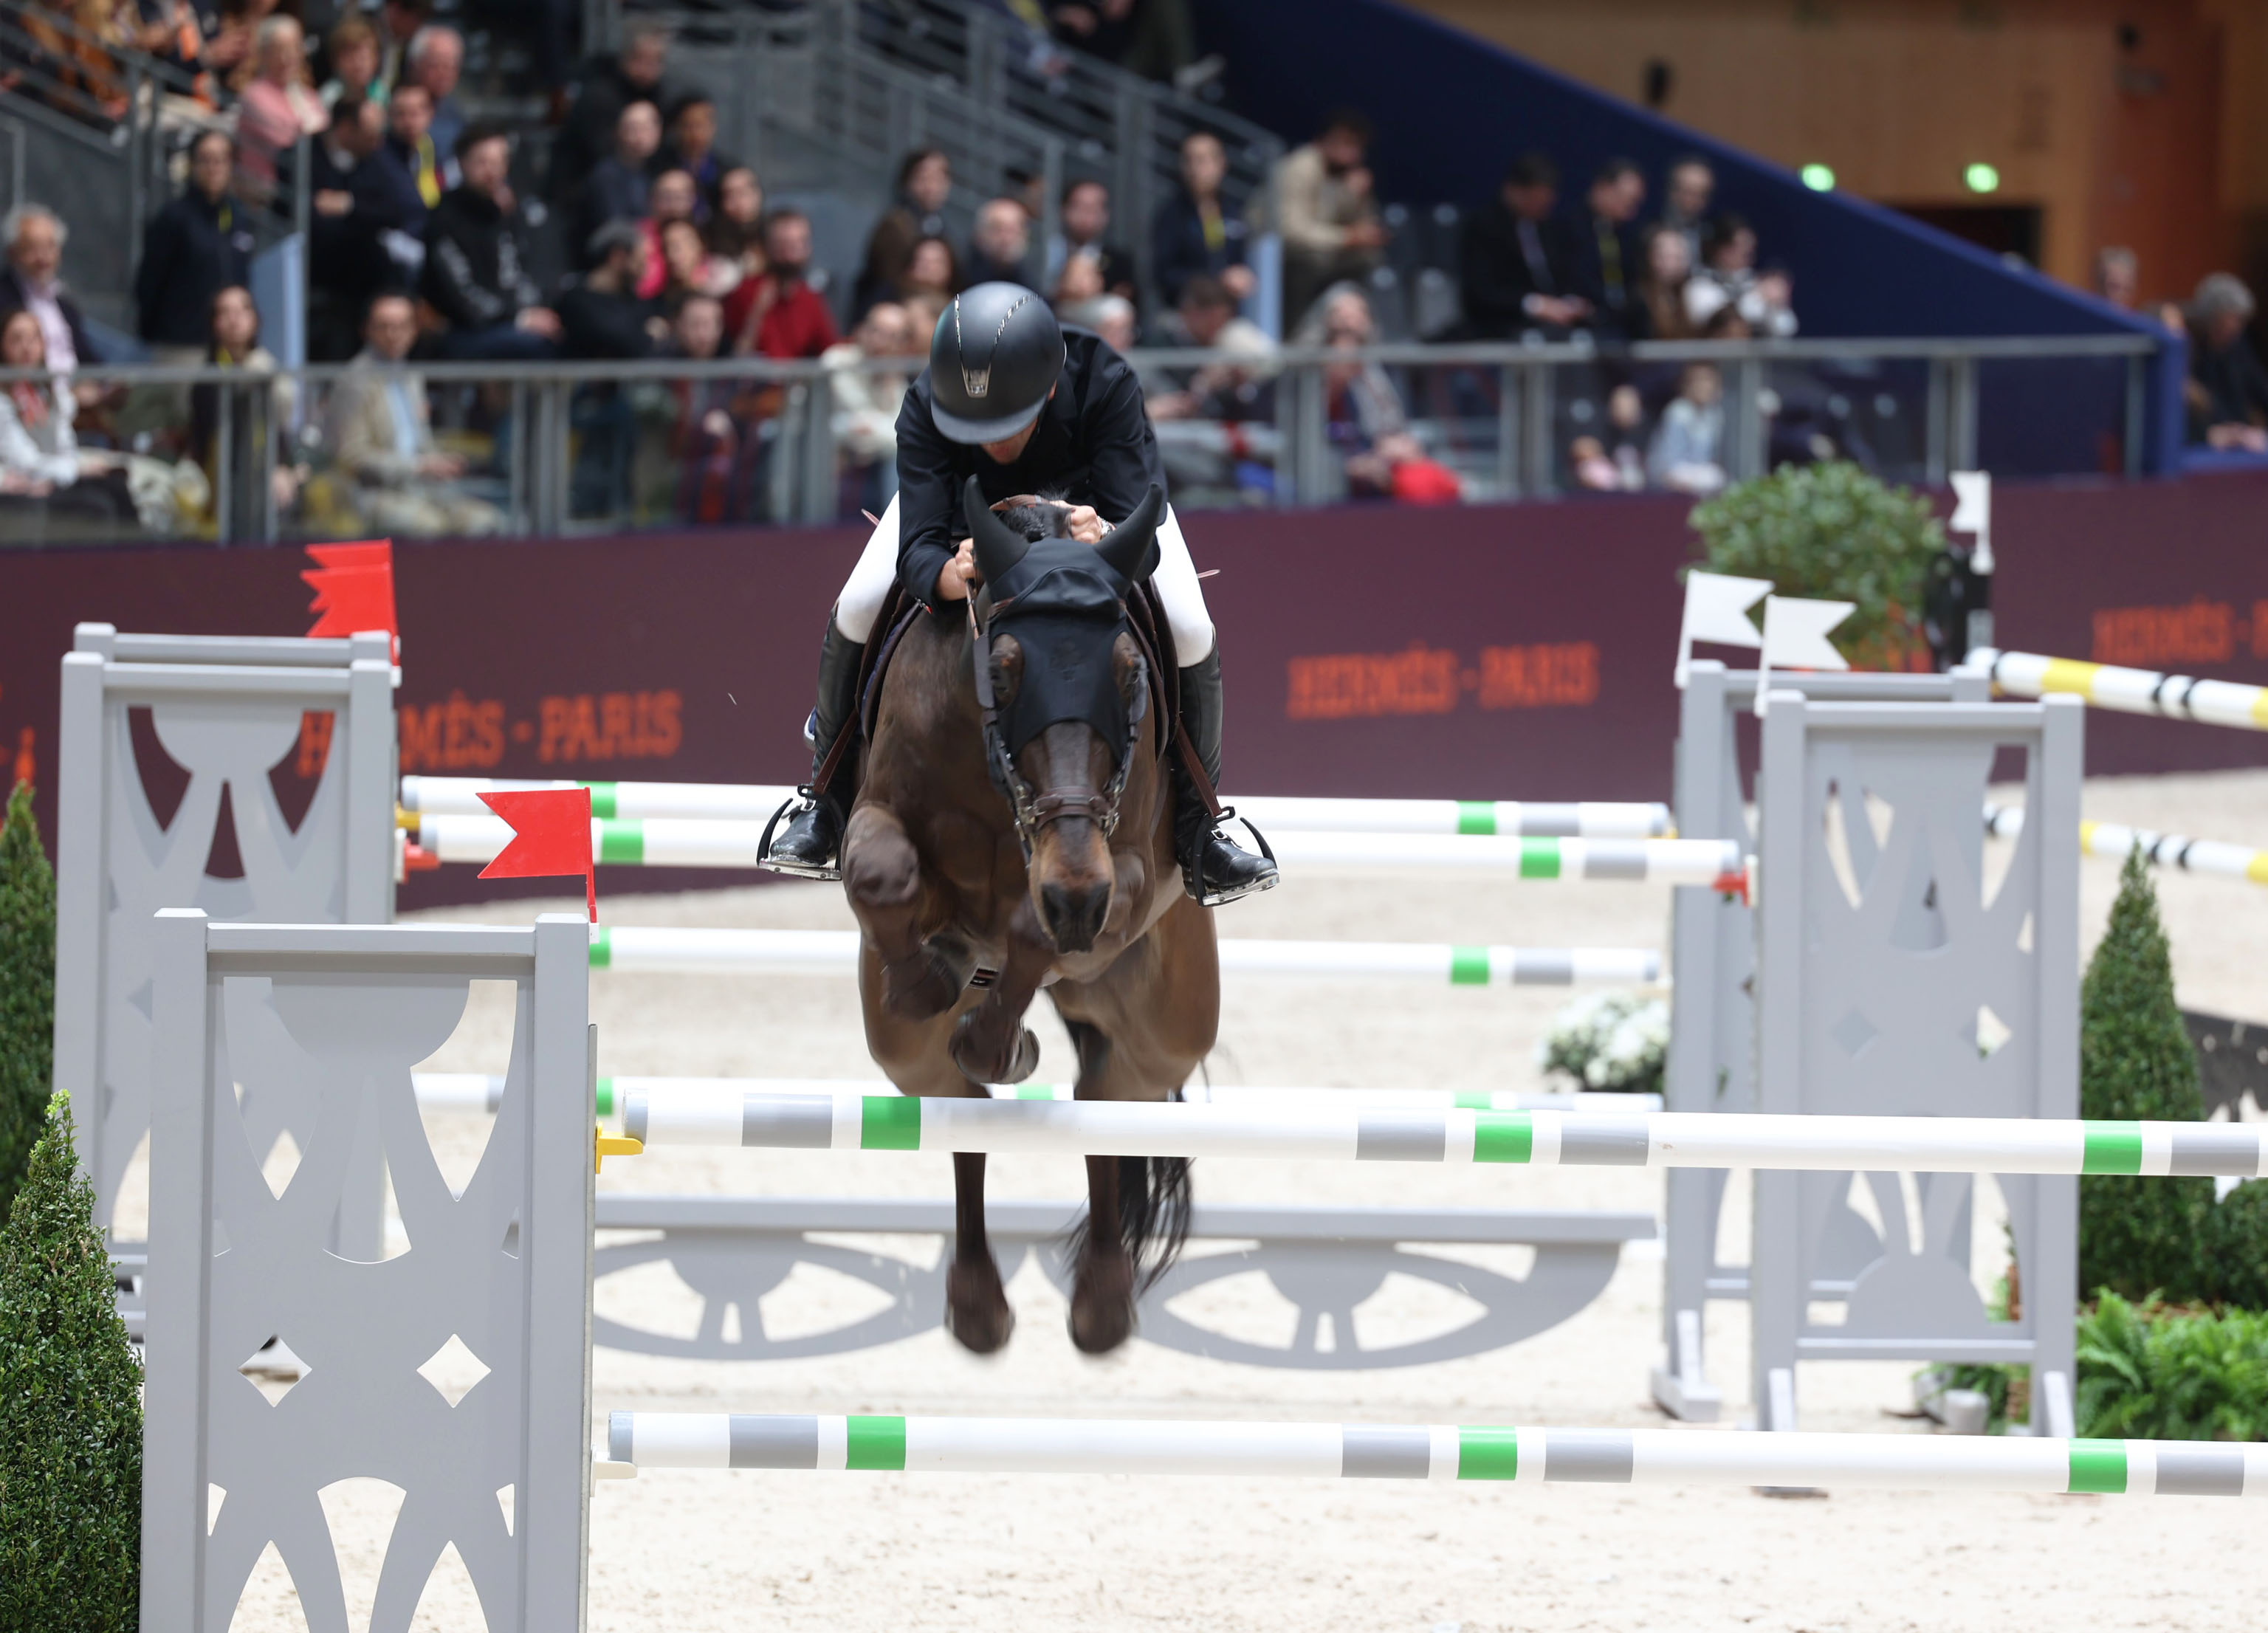 Wilm Vermeir jumps to victory in Paris!